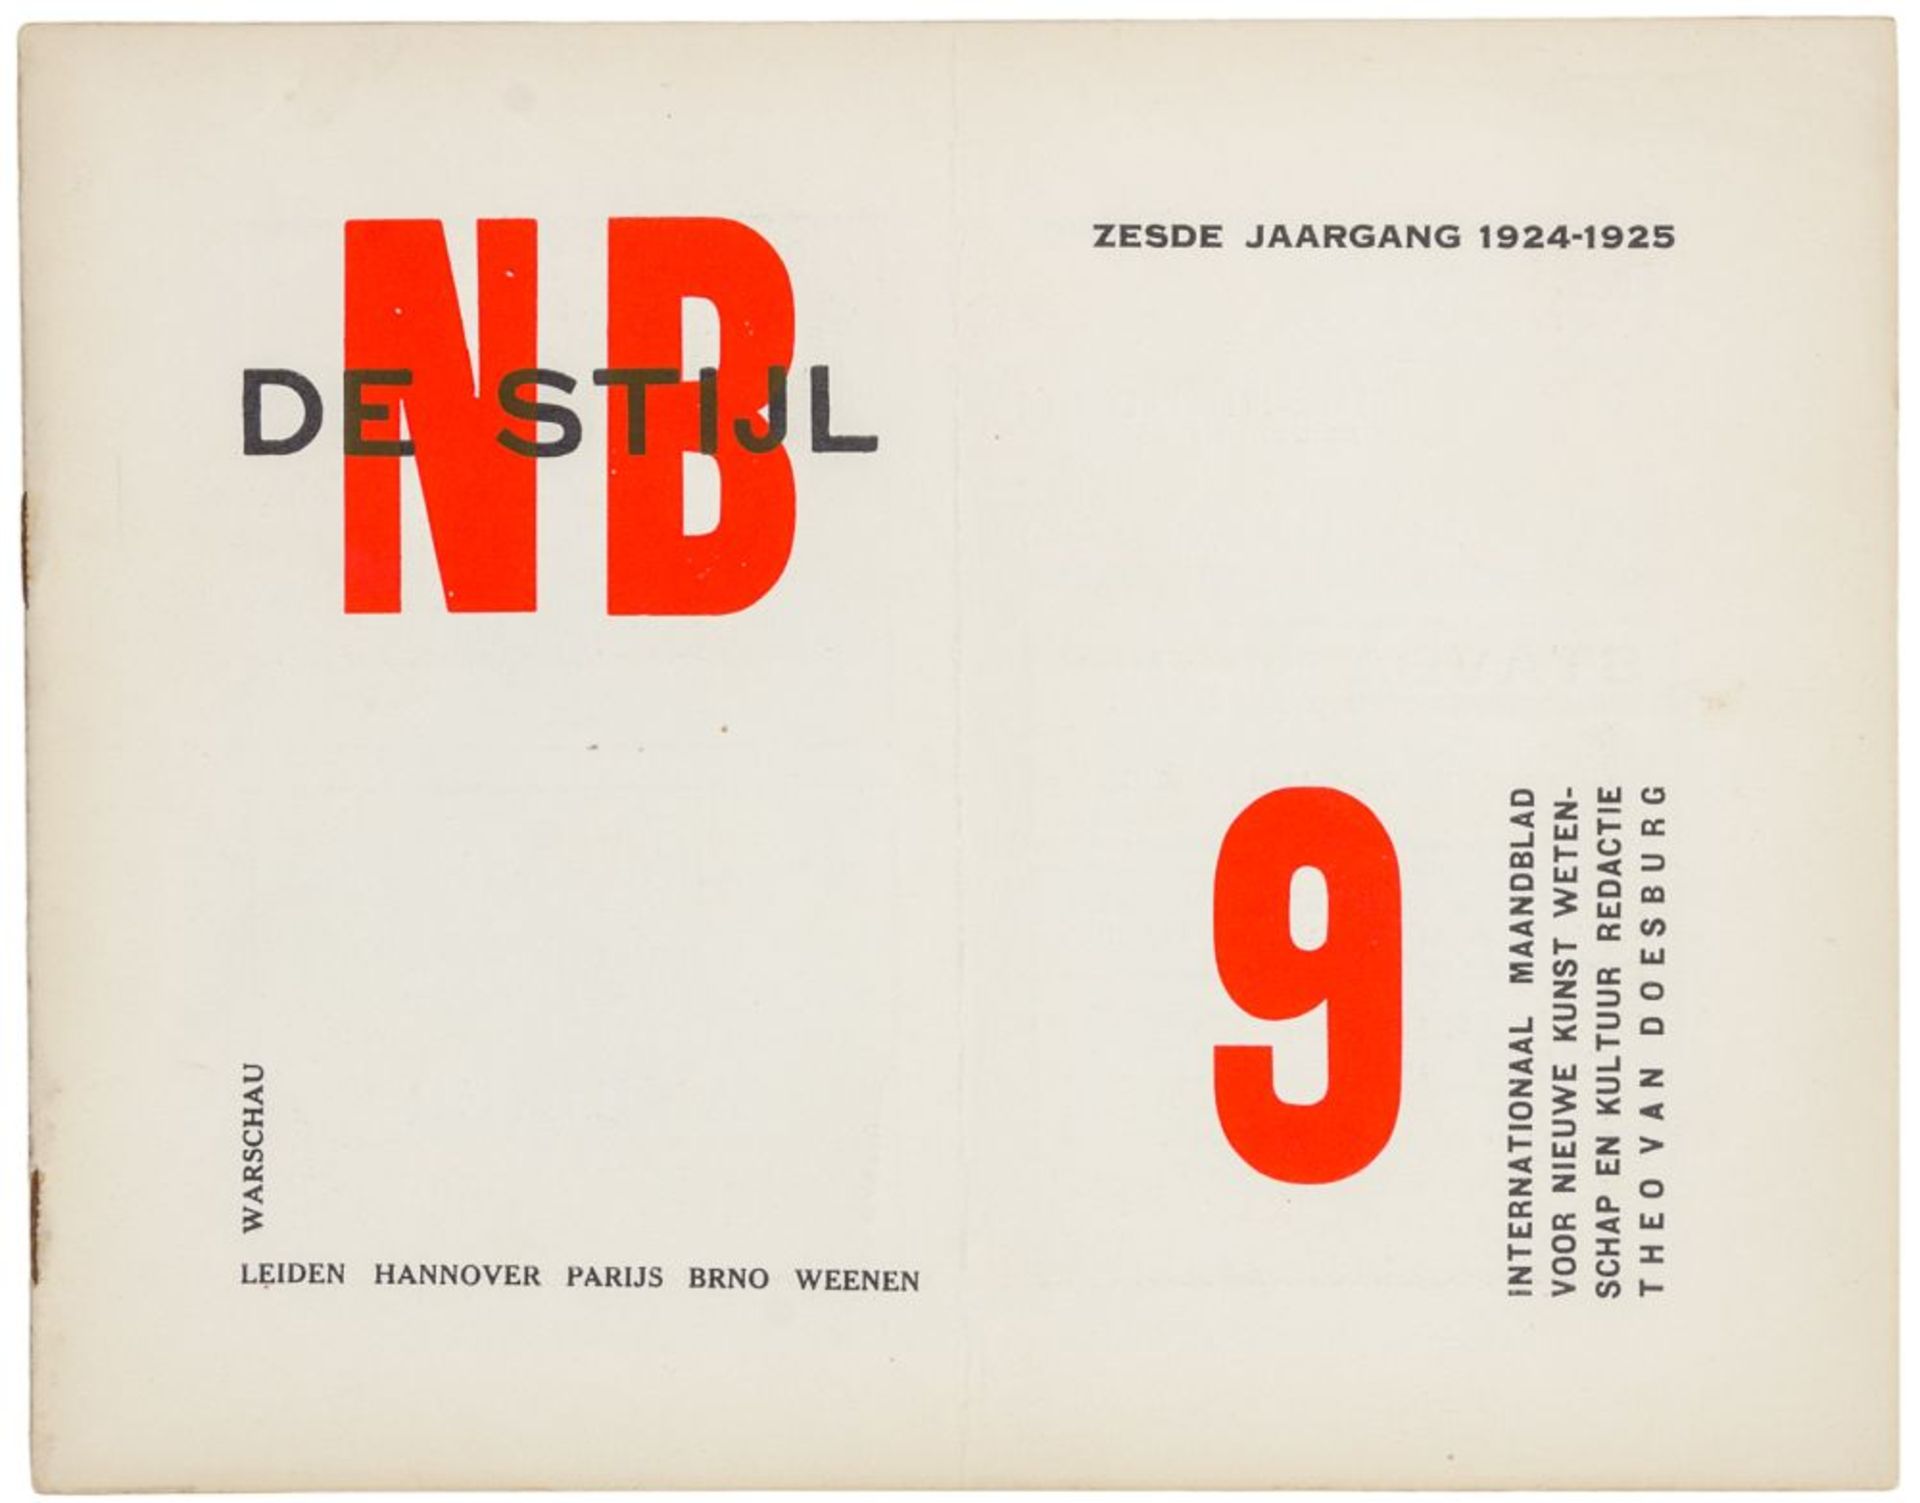 De Stijl. Zesde Jaargang 1924-25, No. 9. International maandblad voor nieuwe kunst, wetenschap en